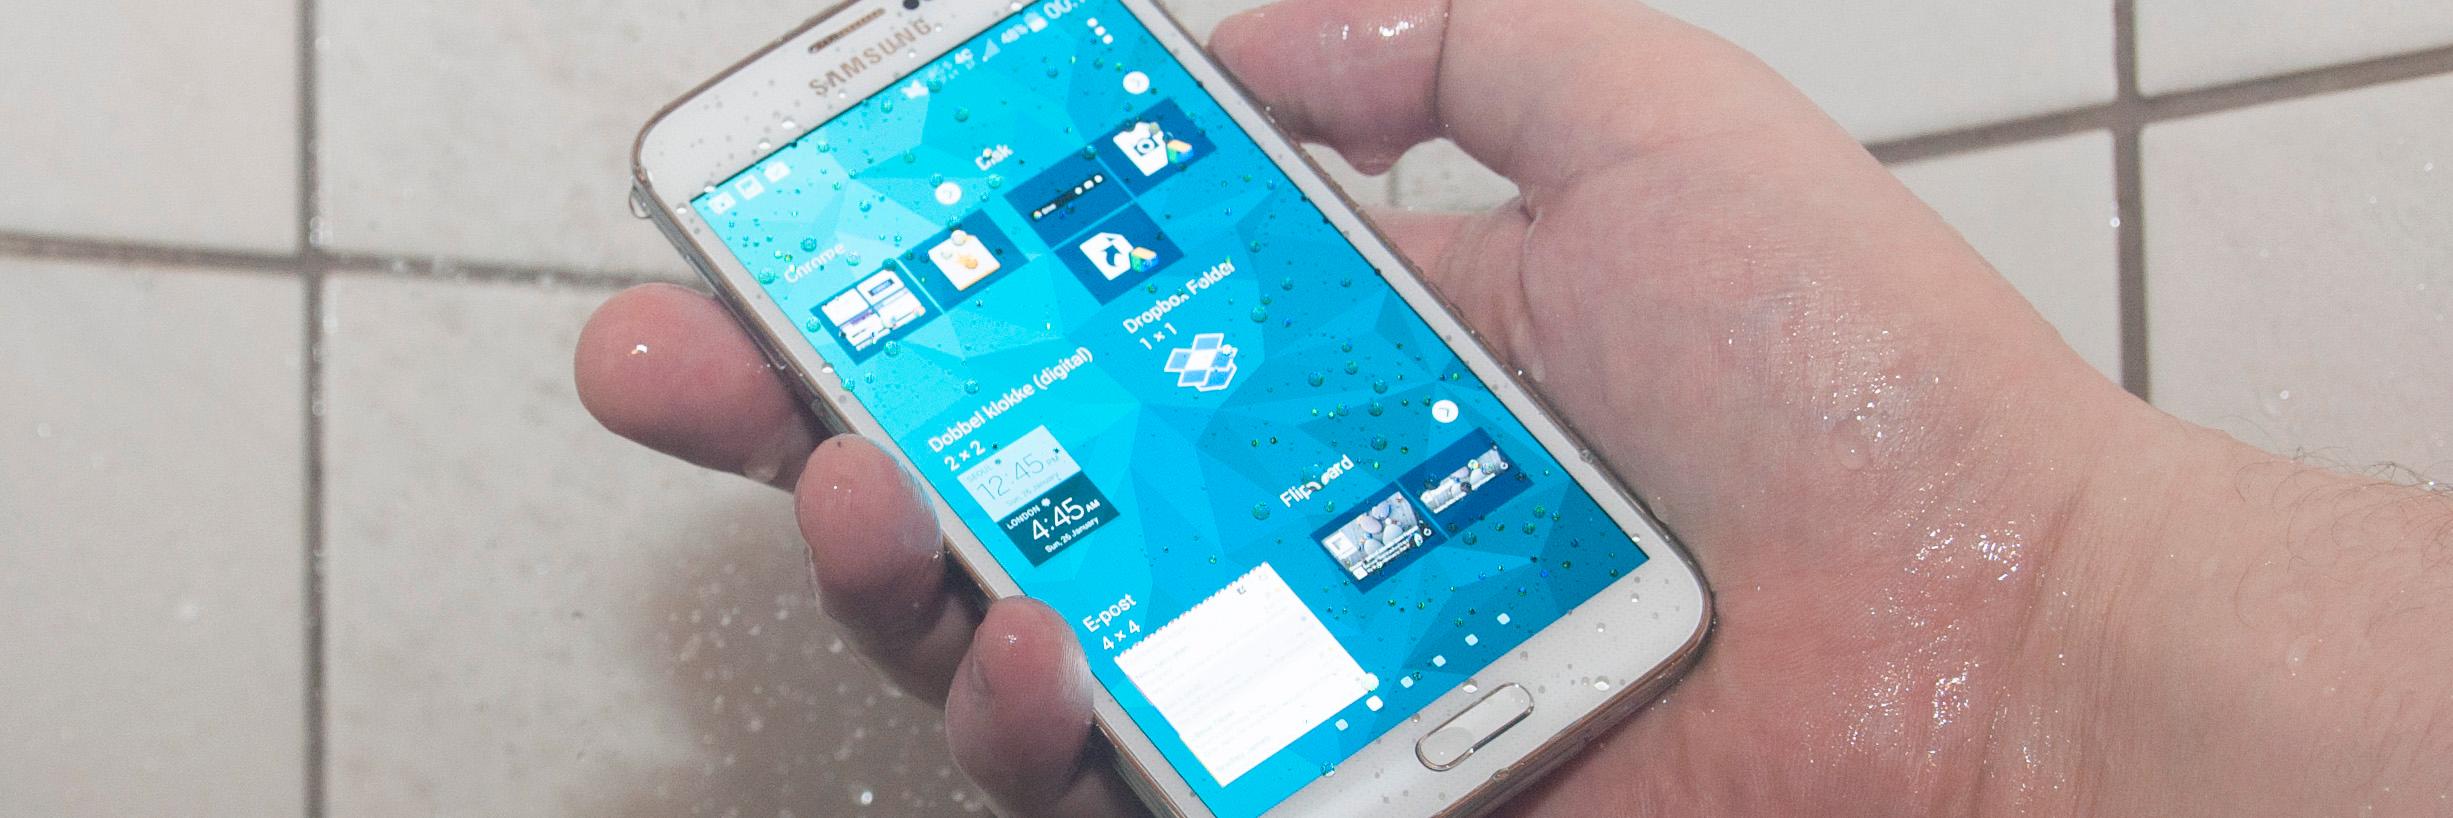 Du kan ta med Galaxy S5 i dusjen uten at det byr på problemer.Foto: Finn Jarle Kvalheim, Amobil.no